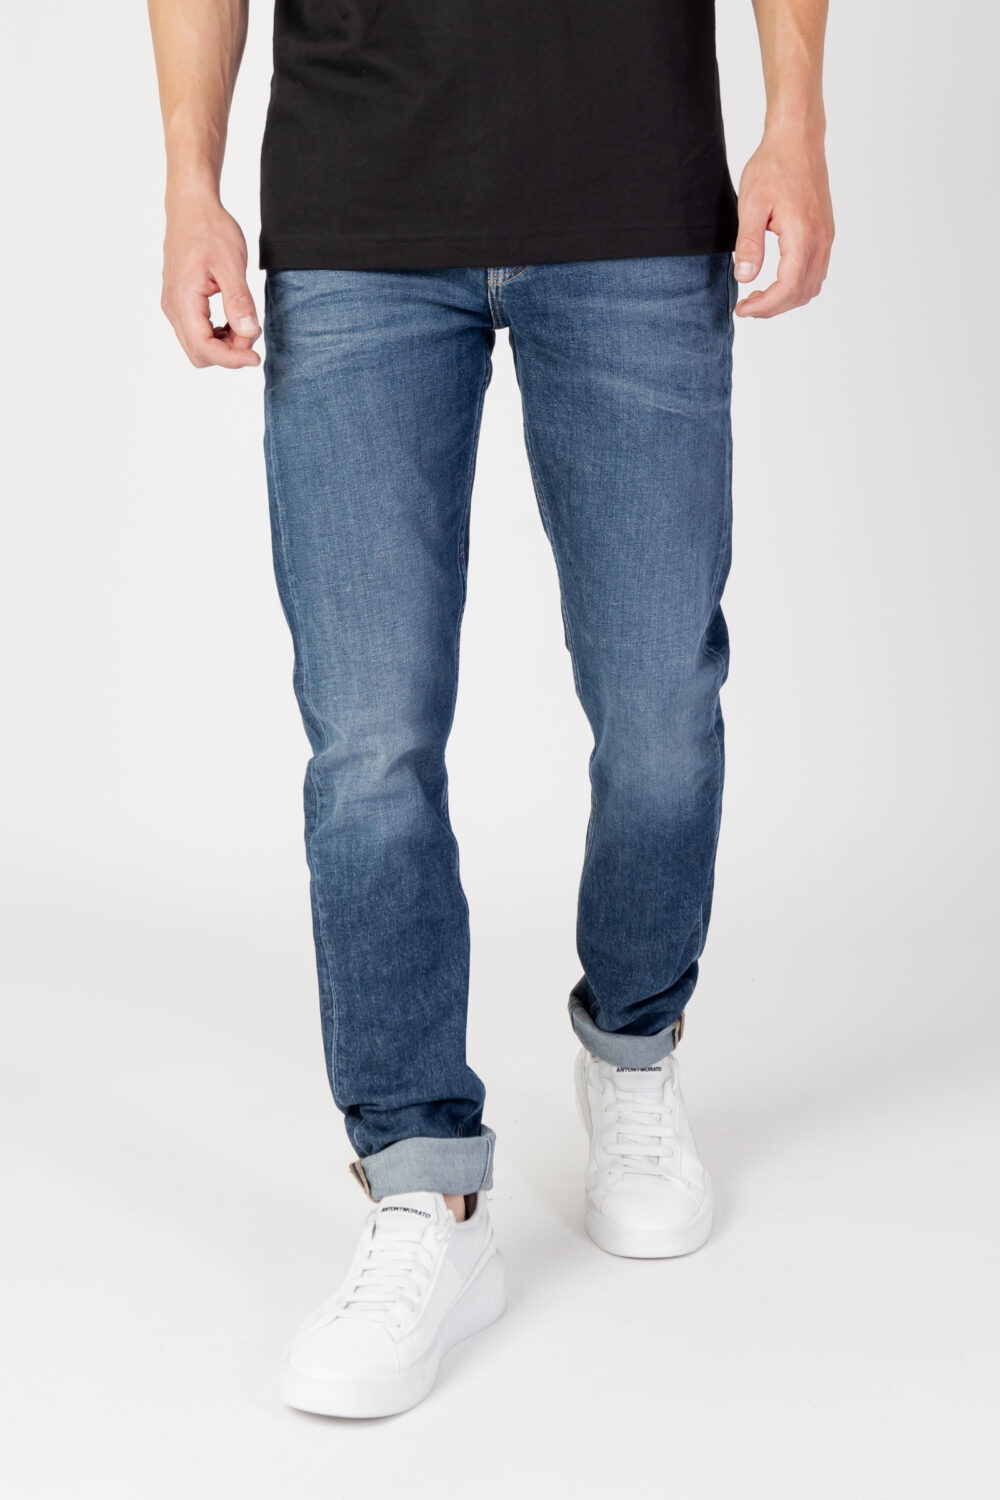 Jeans Tapered Calvin Klein Jeans slim taper Denim - Foto 1